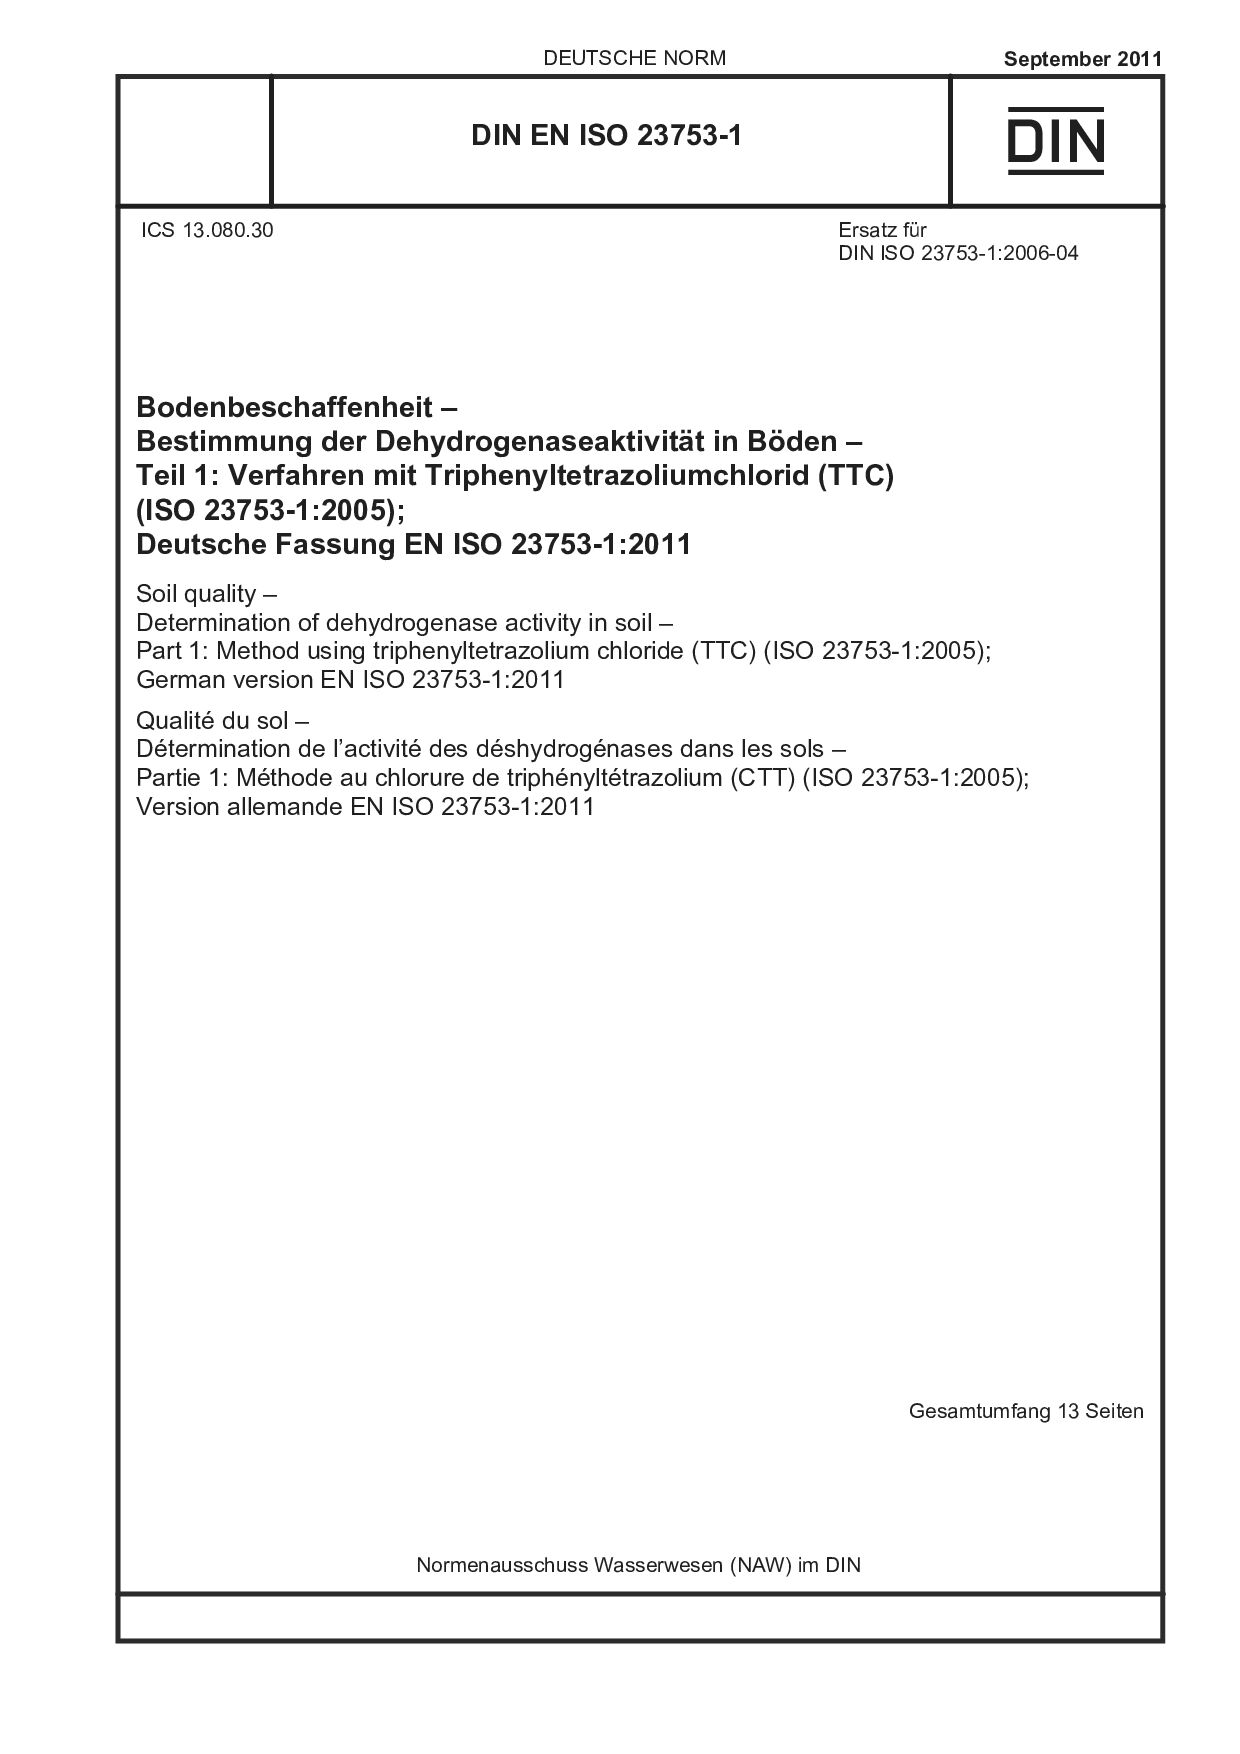 DIN EN ISO 23753-1:2011封面图